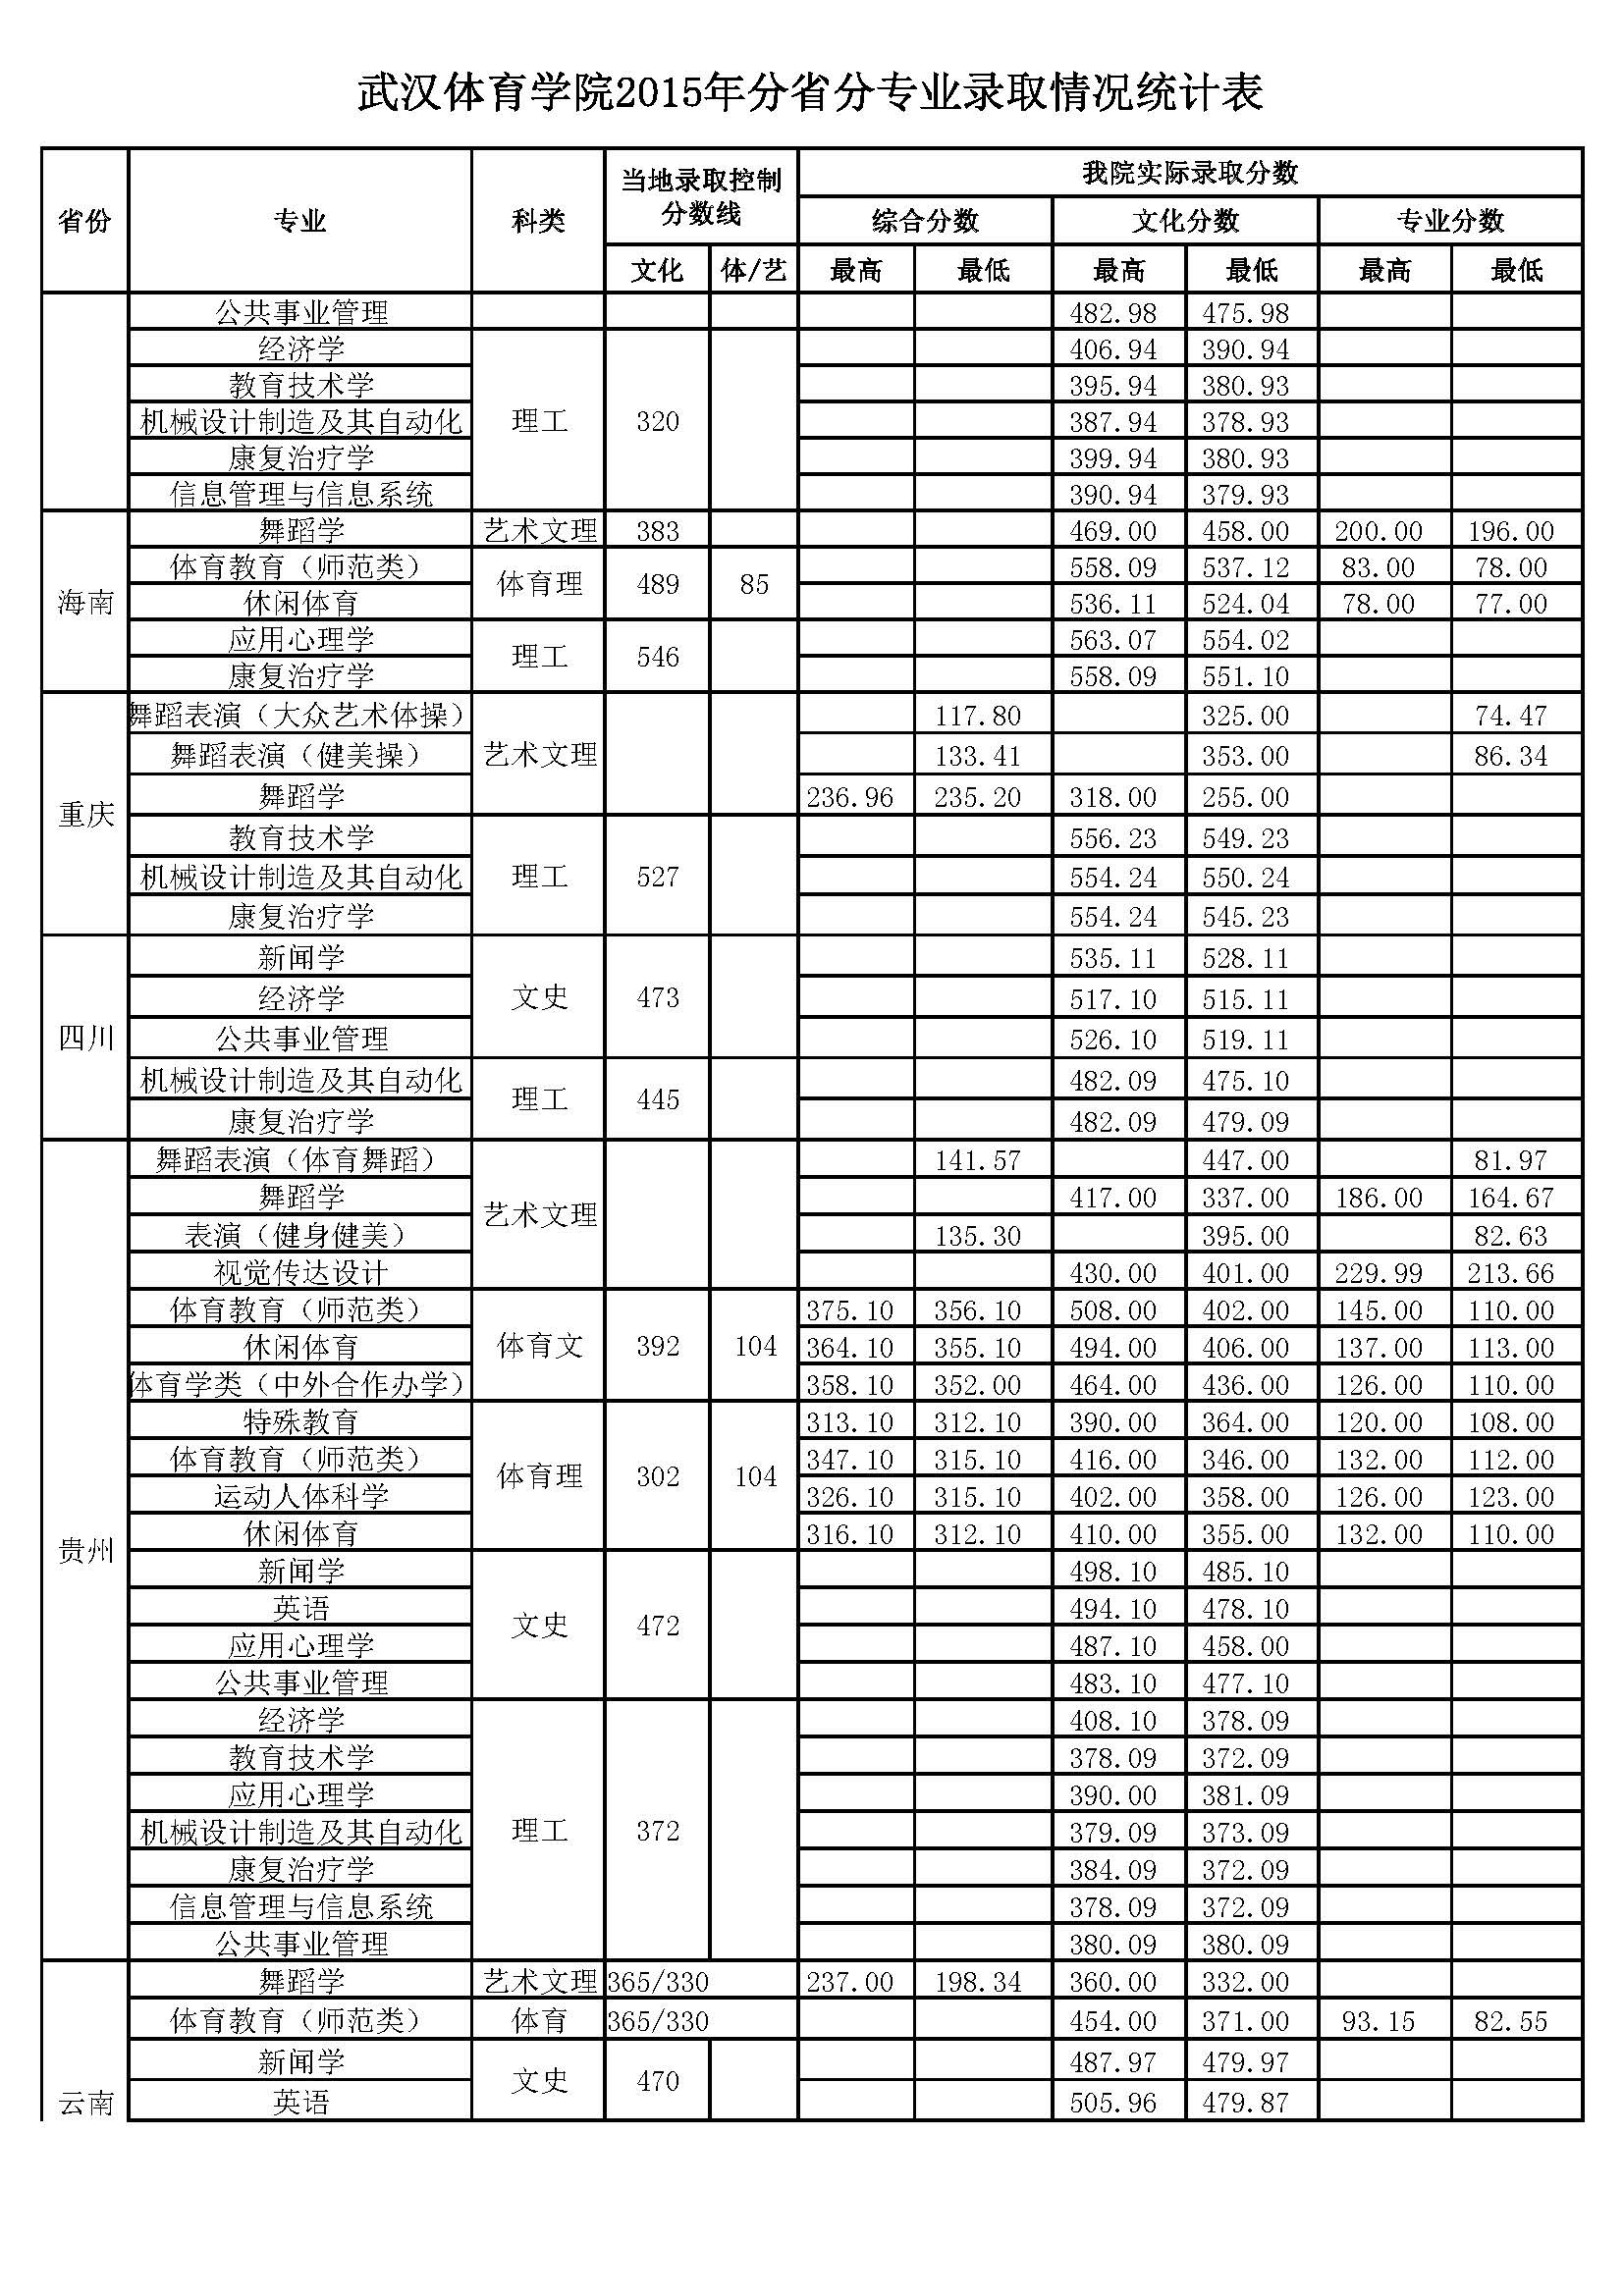 武汉体育学院2015年分省分专业录取分数情况